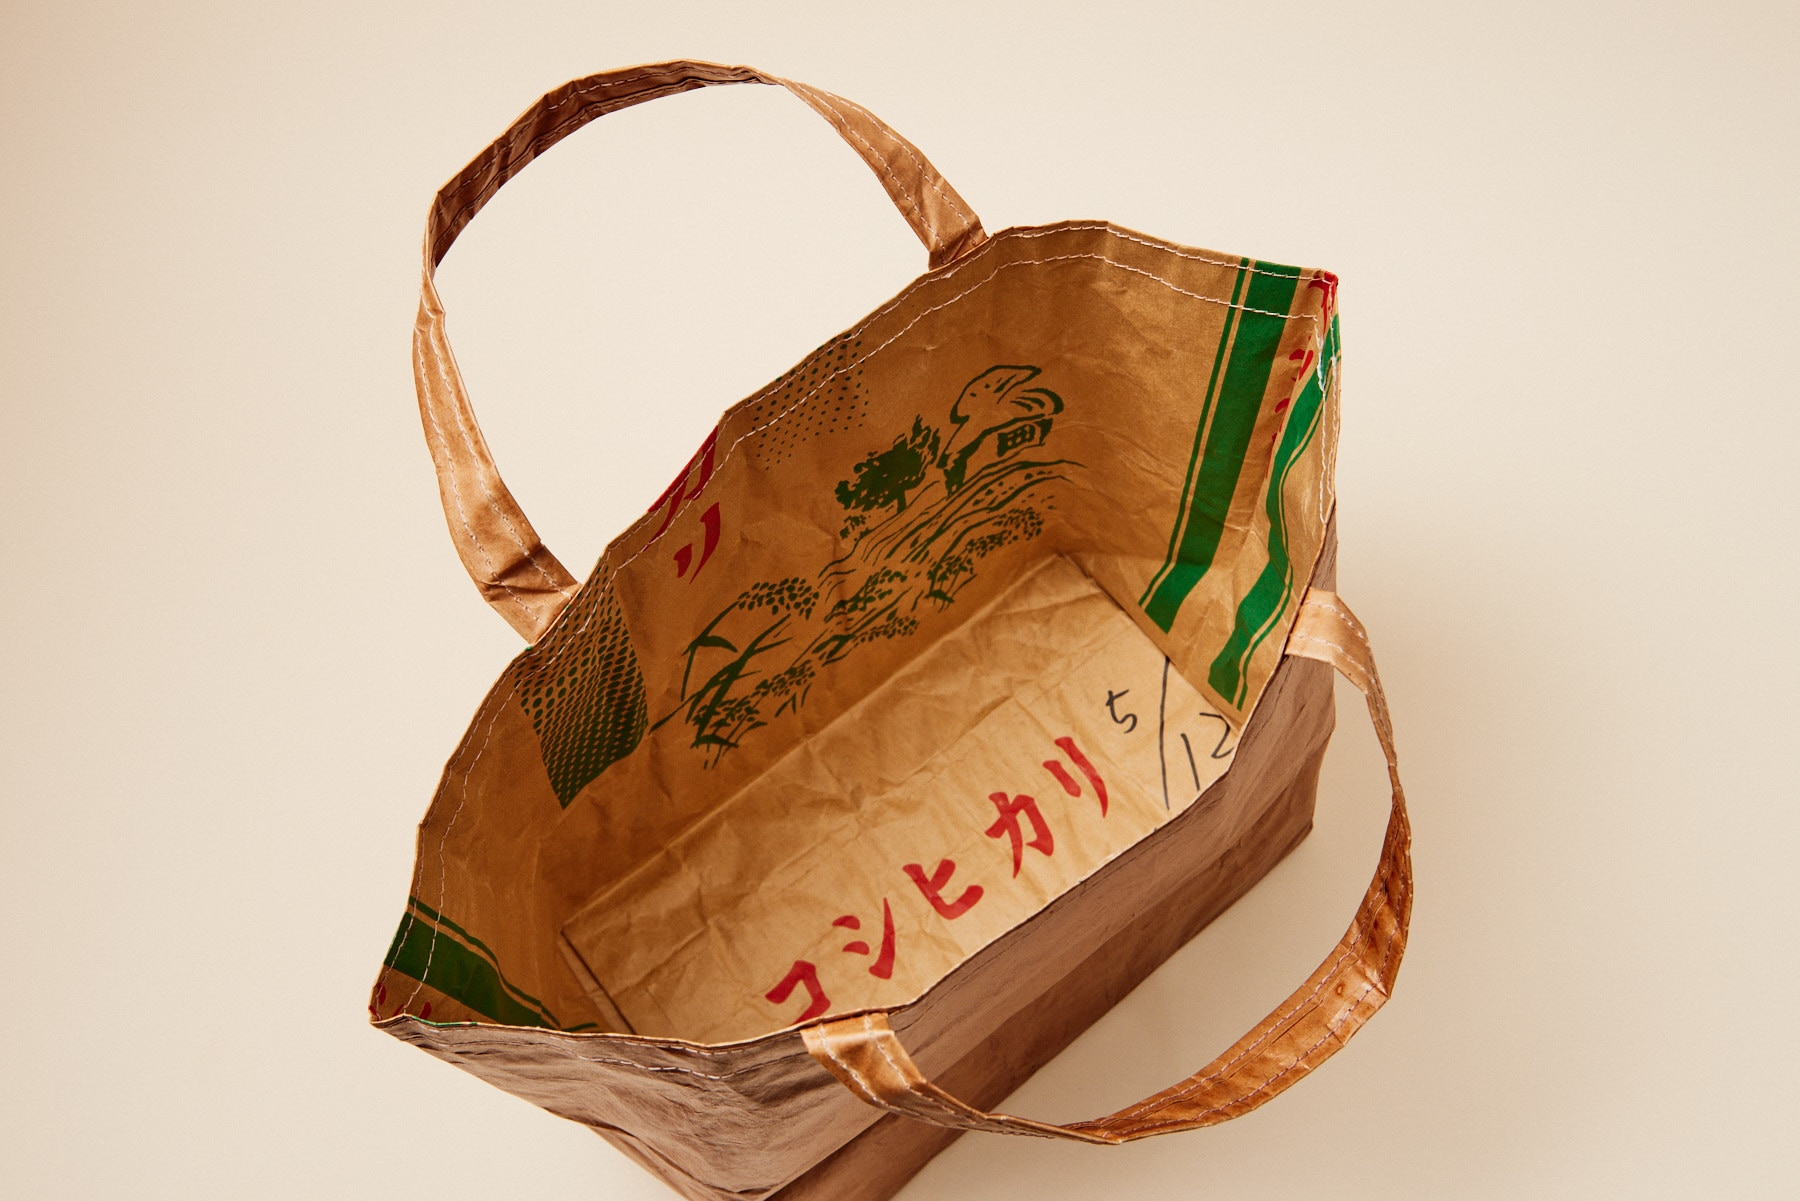 米袋バッグ「お袋さん」柿渋